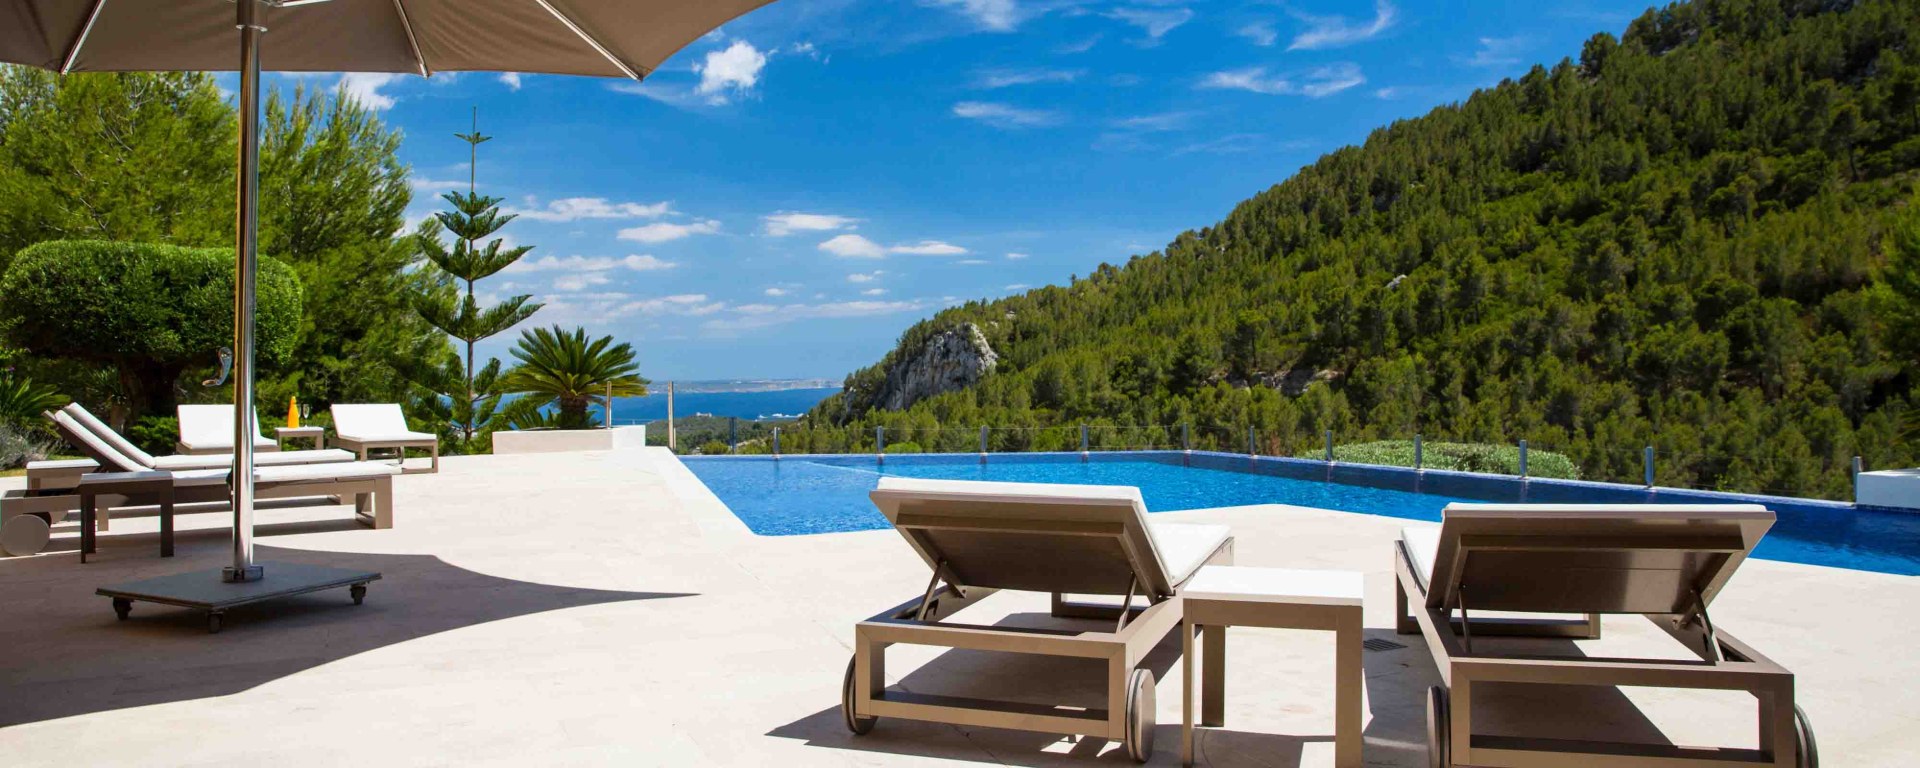 Luxus Ferienhaus Mallorca Mieten 20